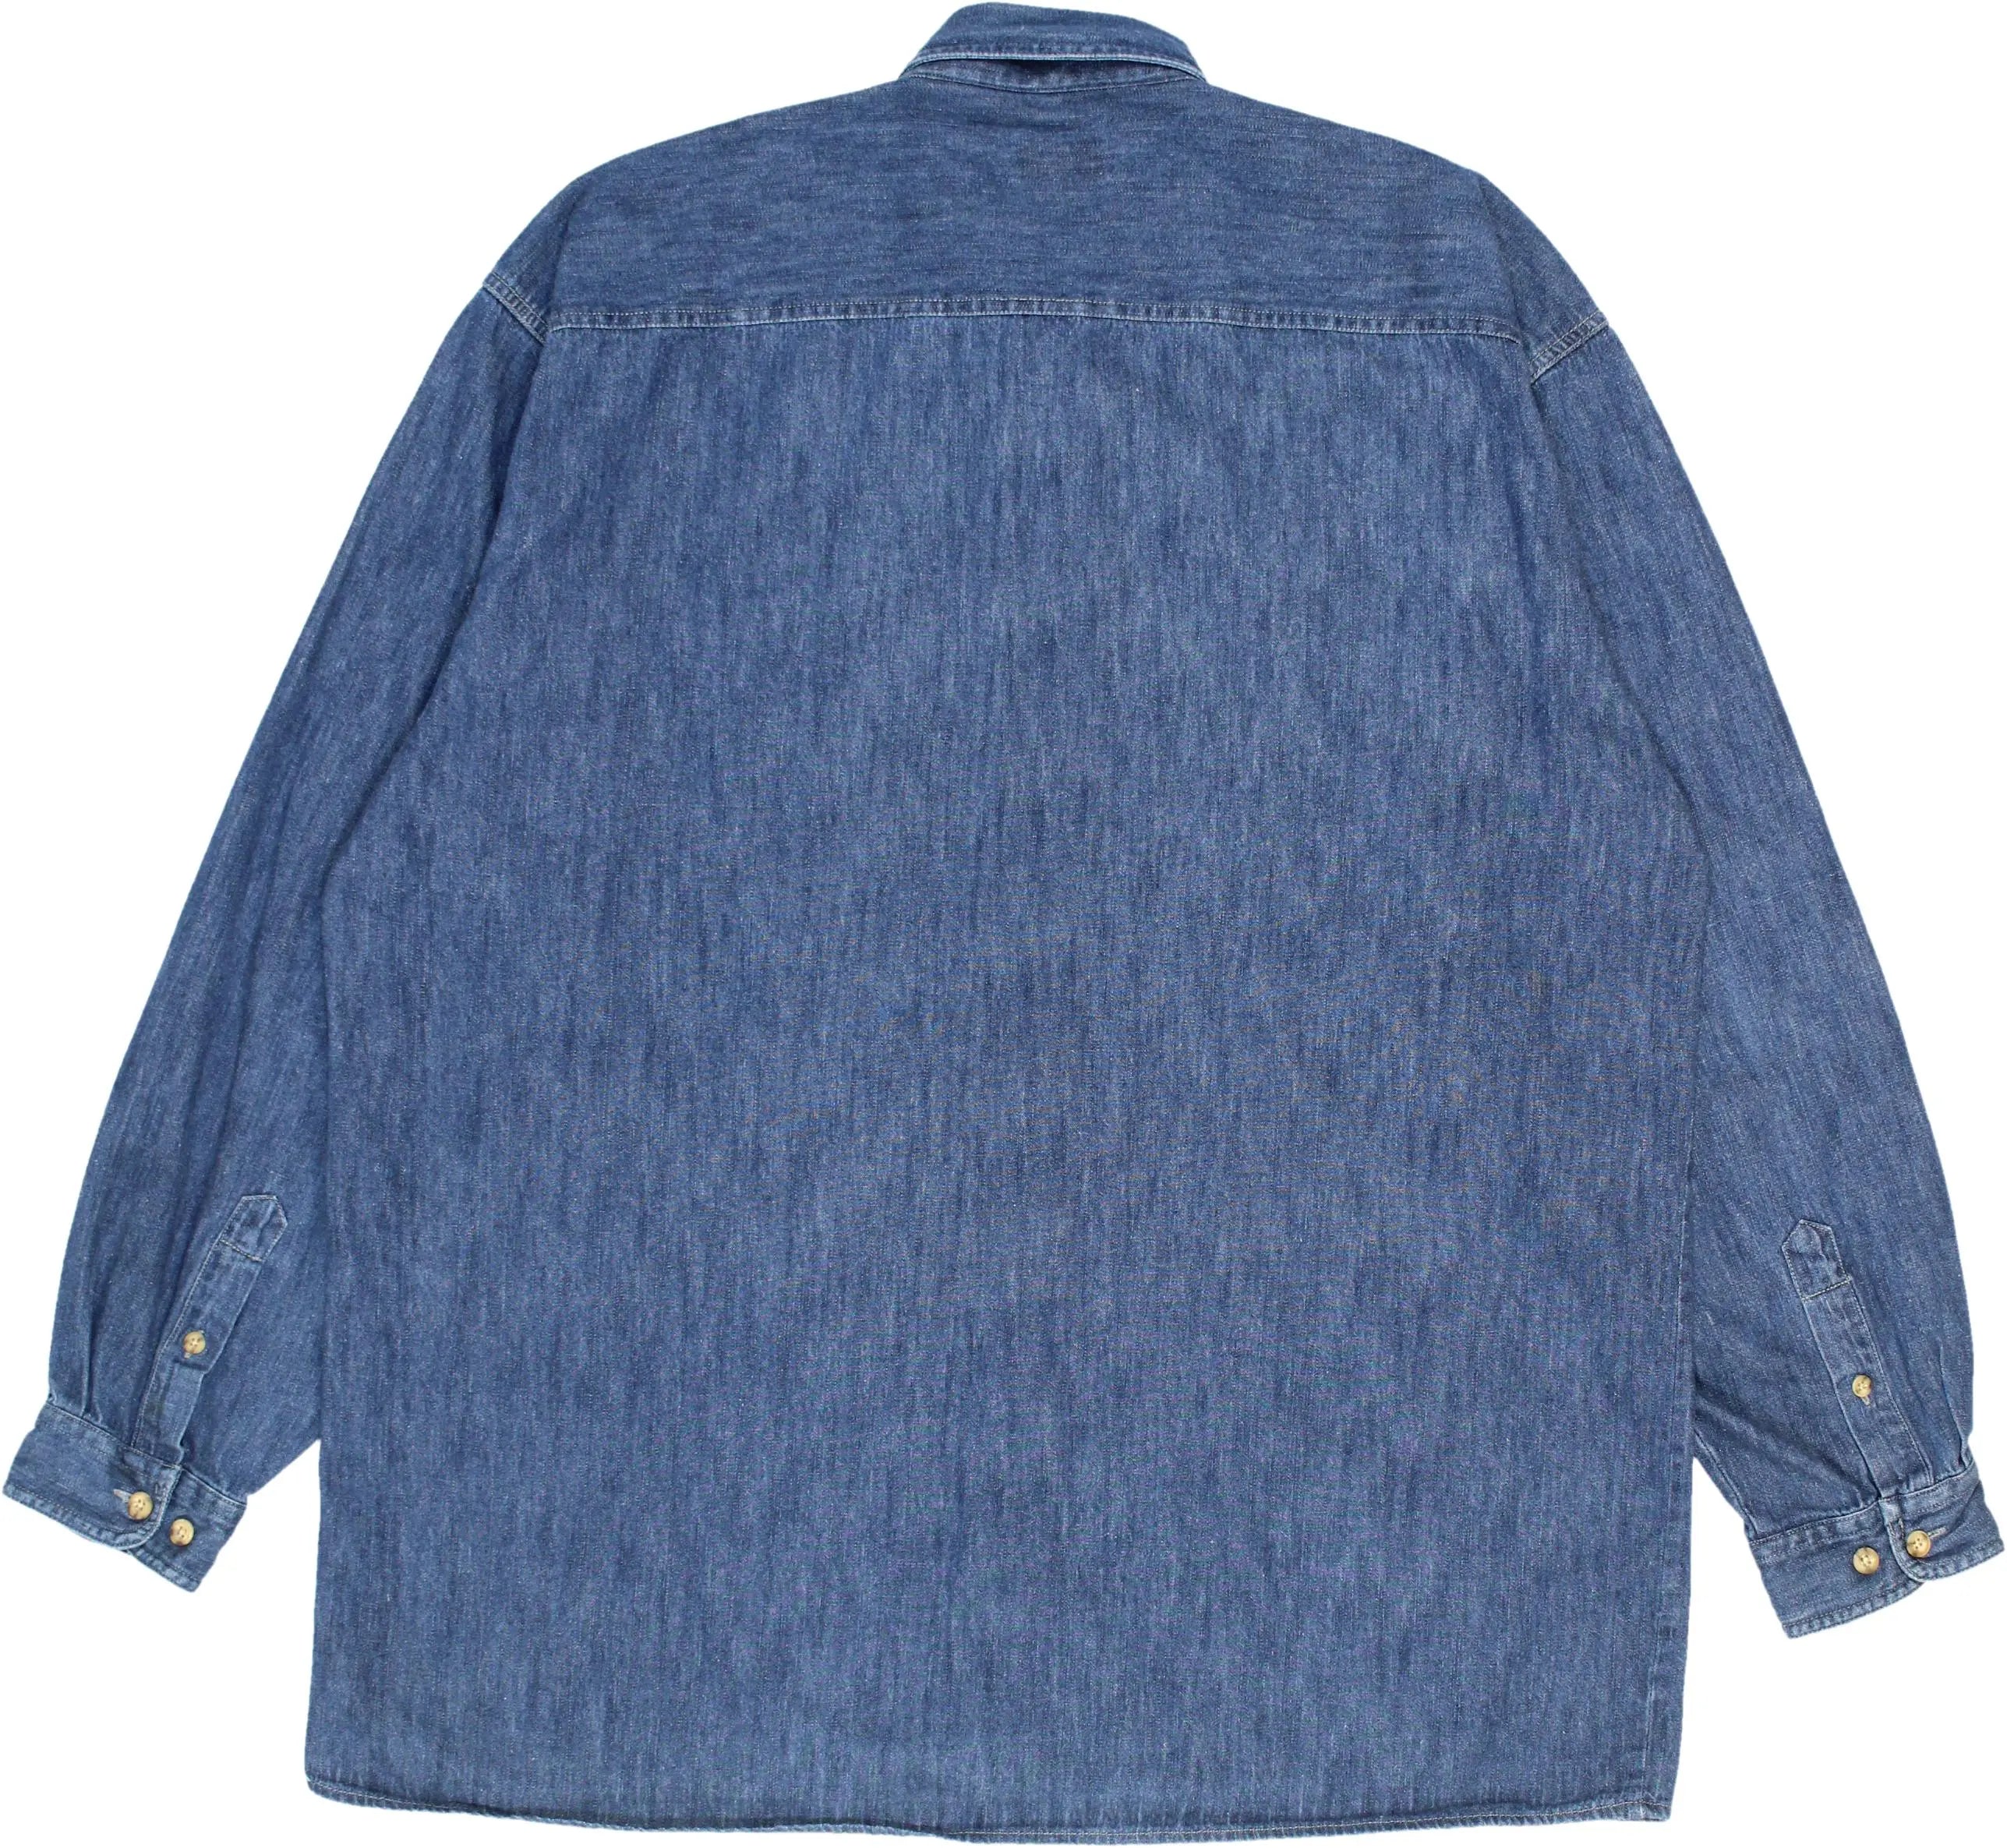 Camargue - Vintage Denim Shirt- ThriftTale.com - Vintage and second handclothing